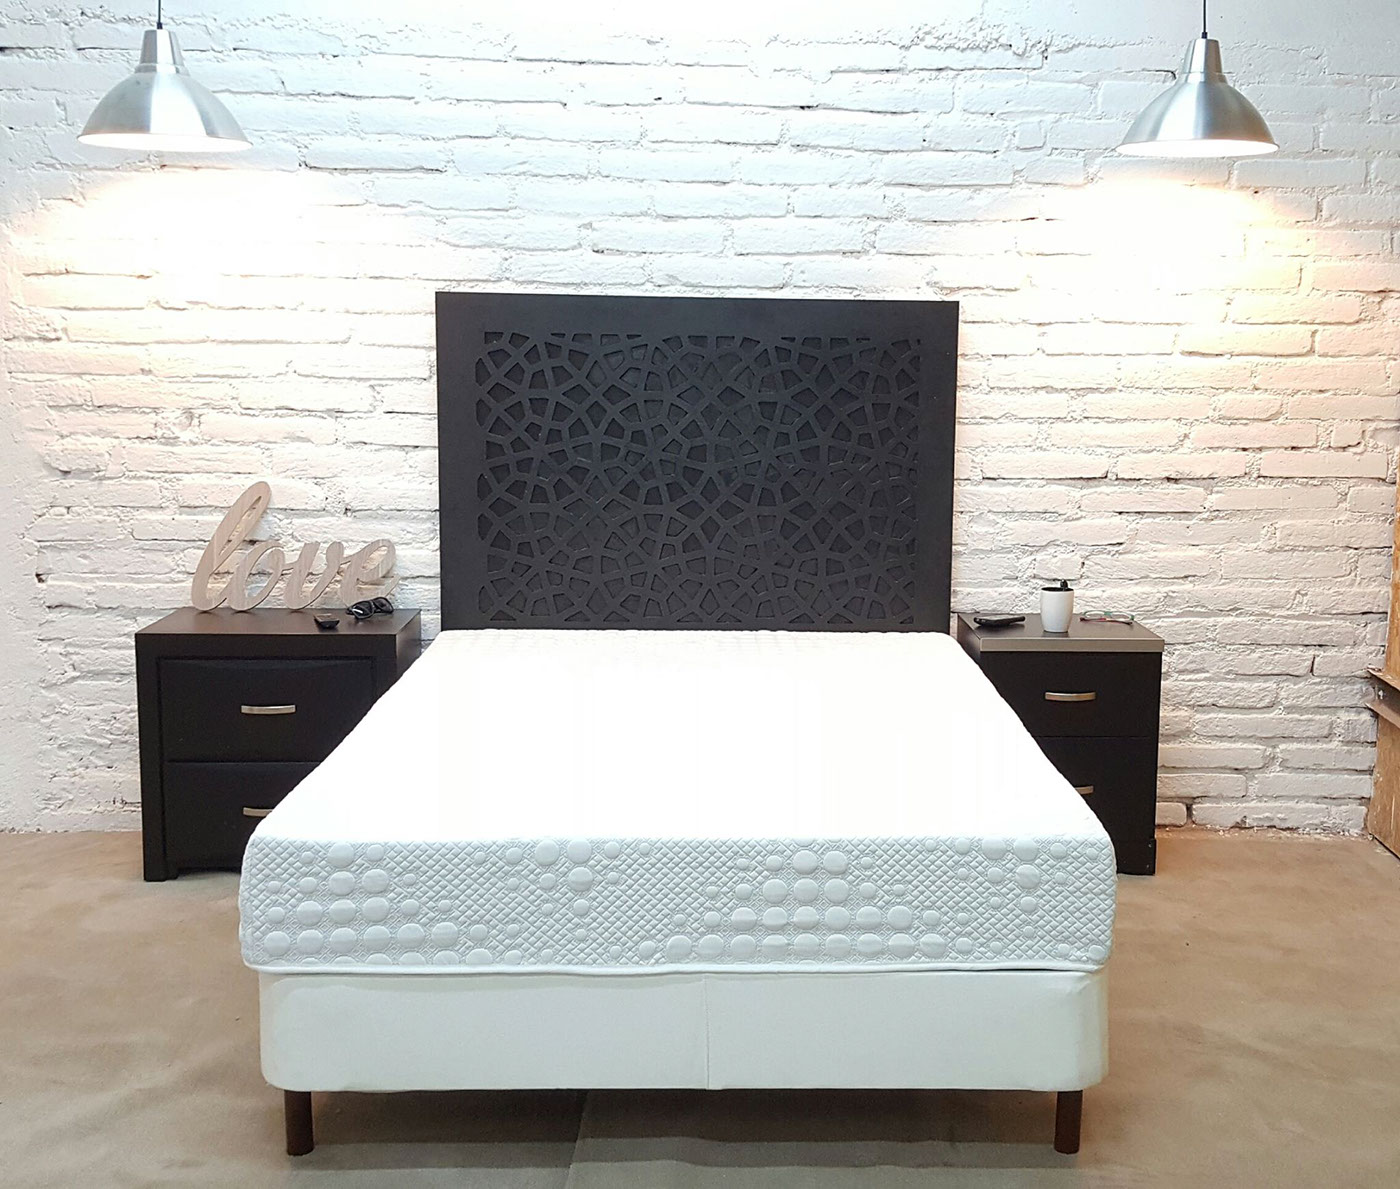 Foam mattress headboard plywood bed